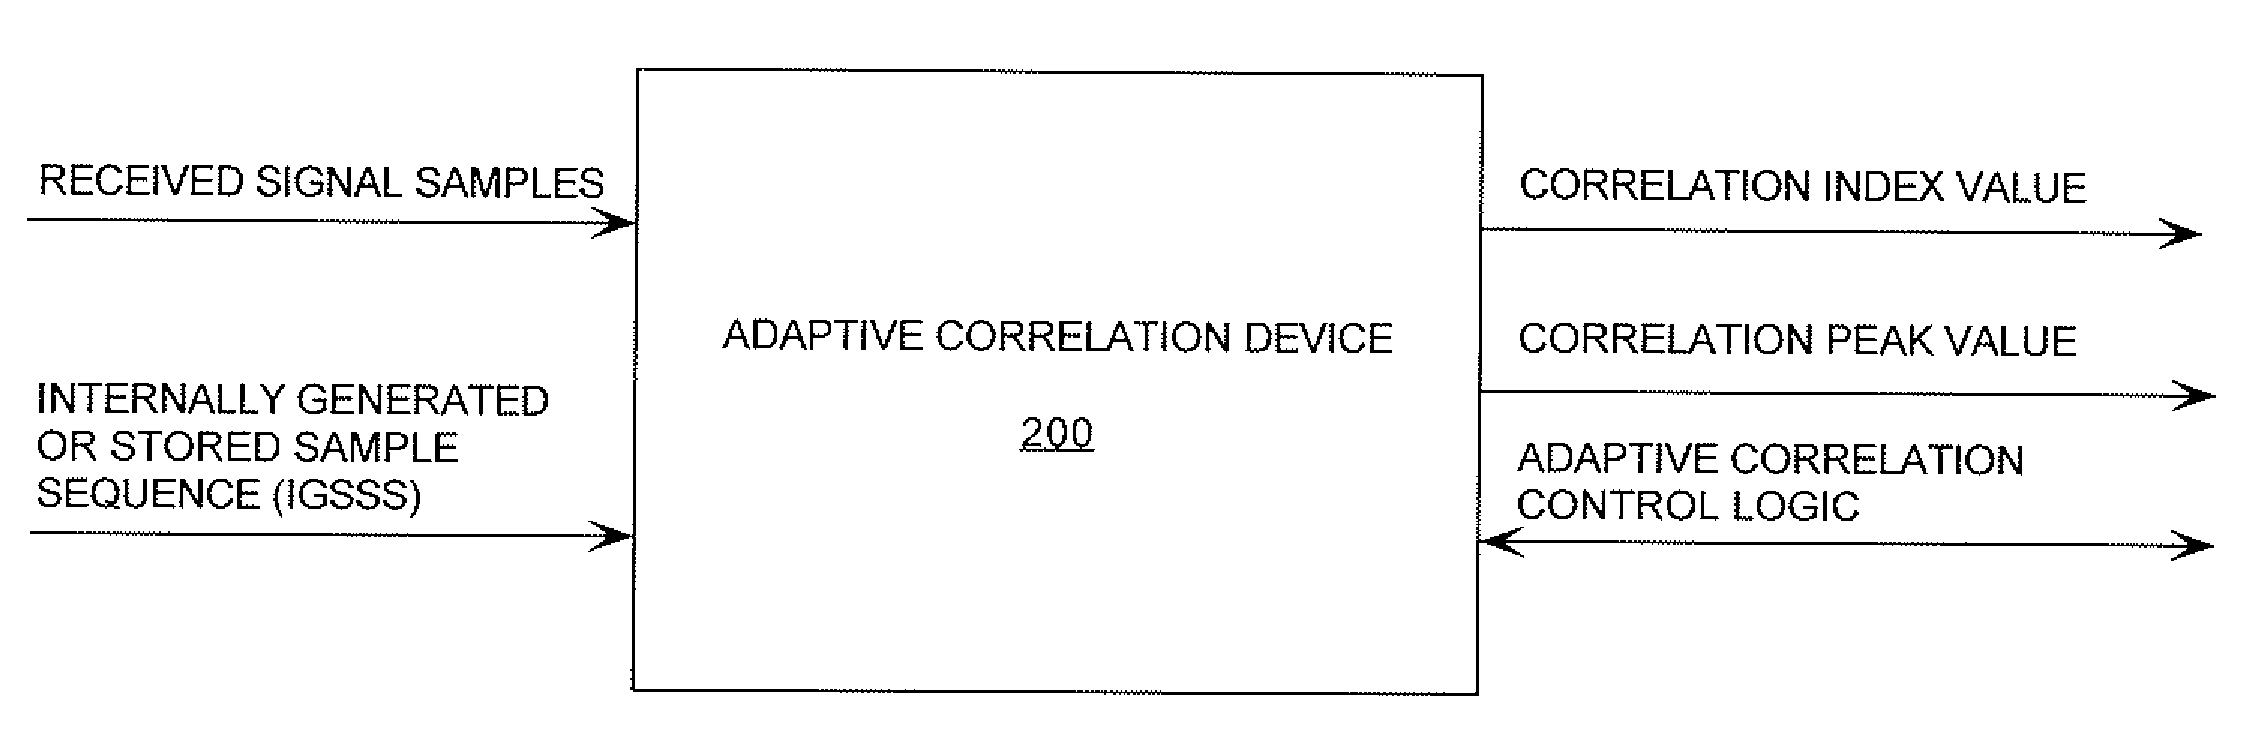 Adaptive correlation